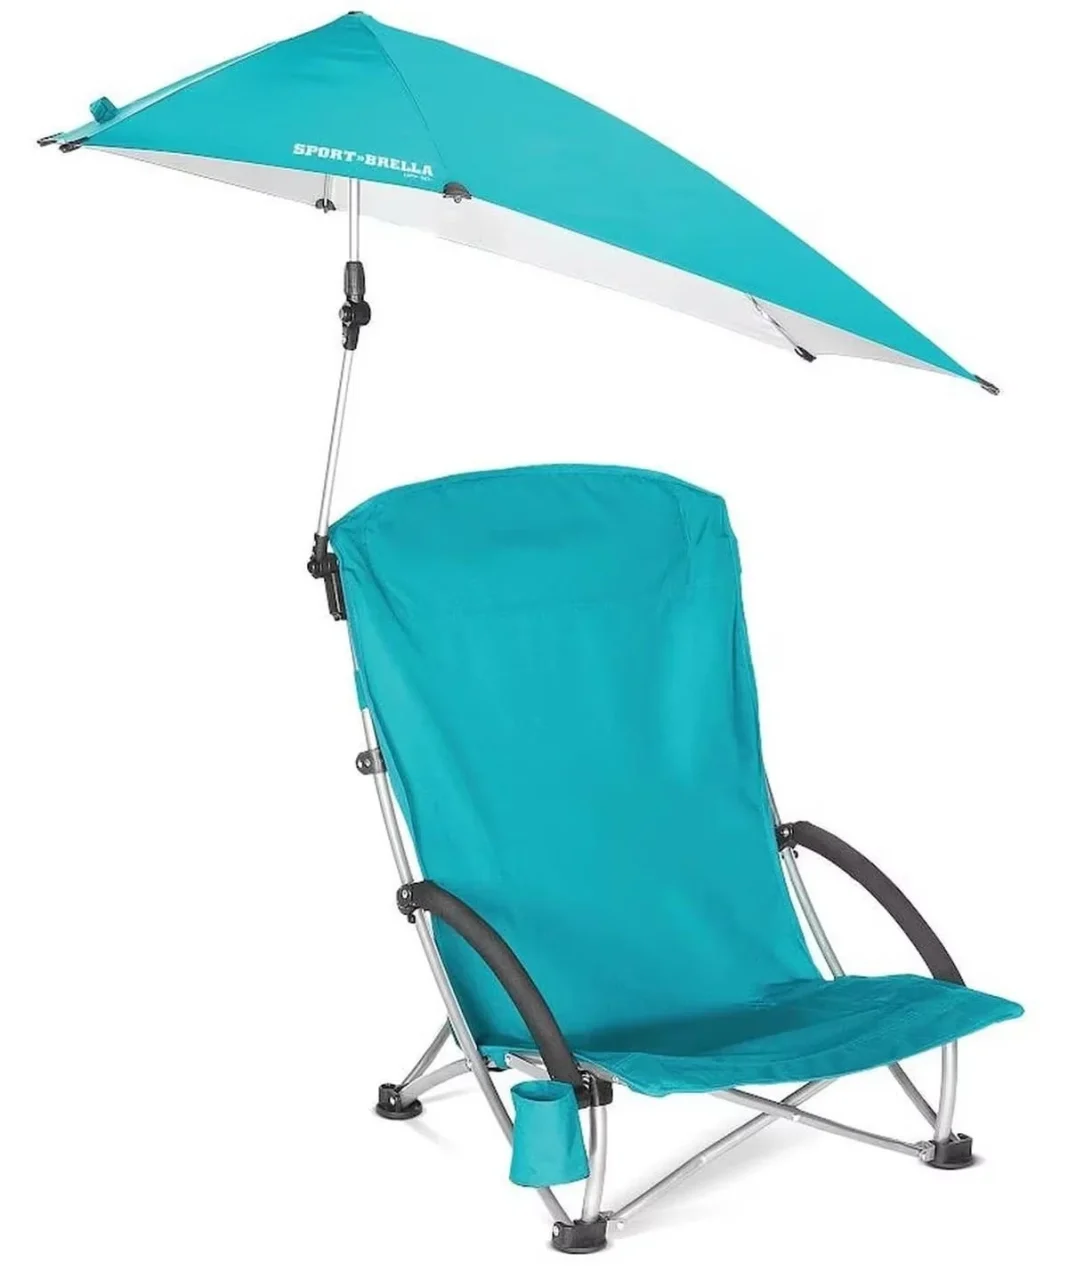 Decathlon tiene rebajada la silla con sombrilla que vas a necesitar este verano en la playa